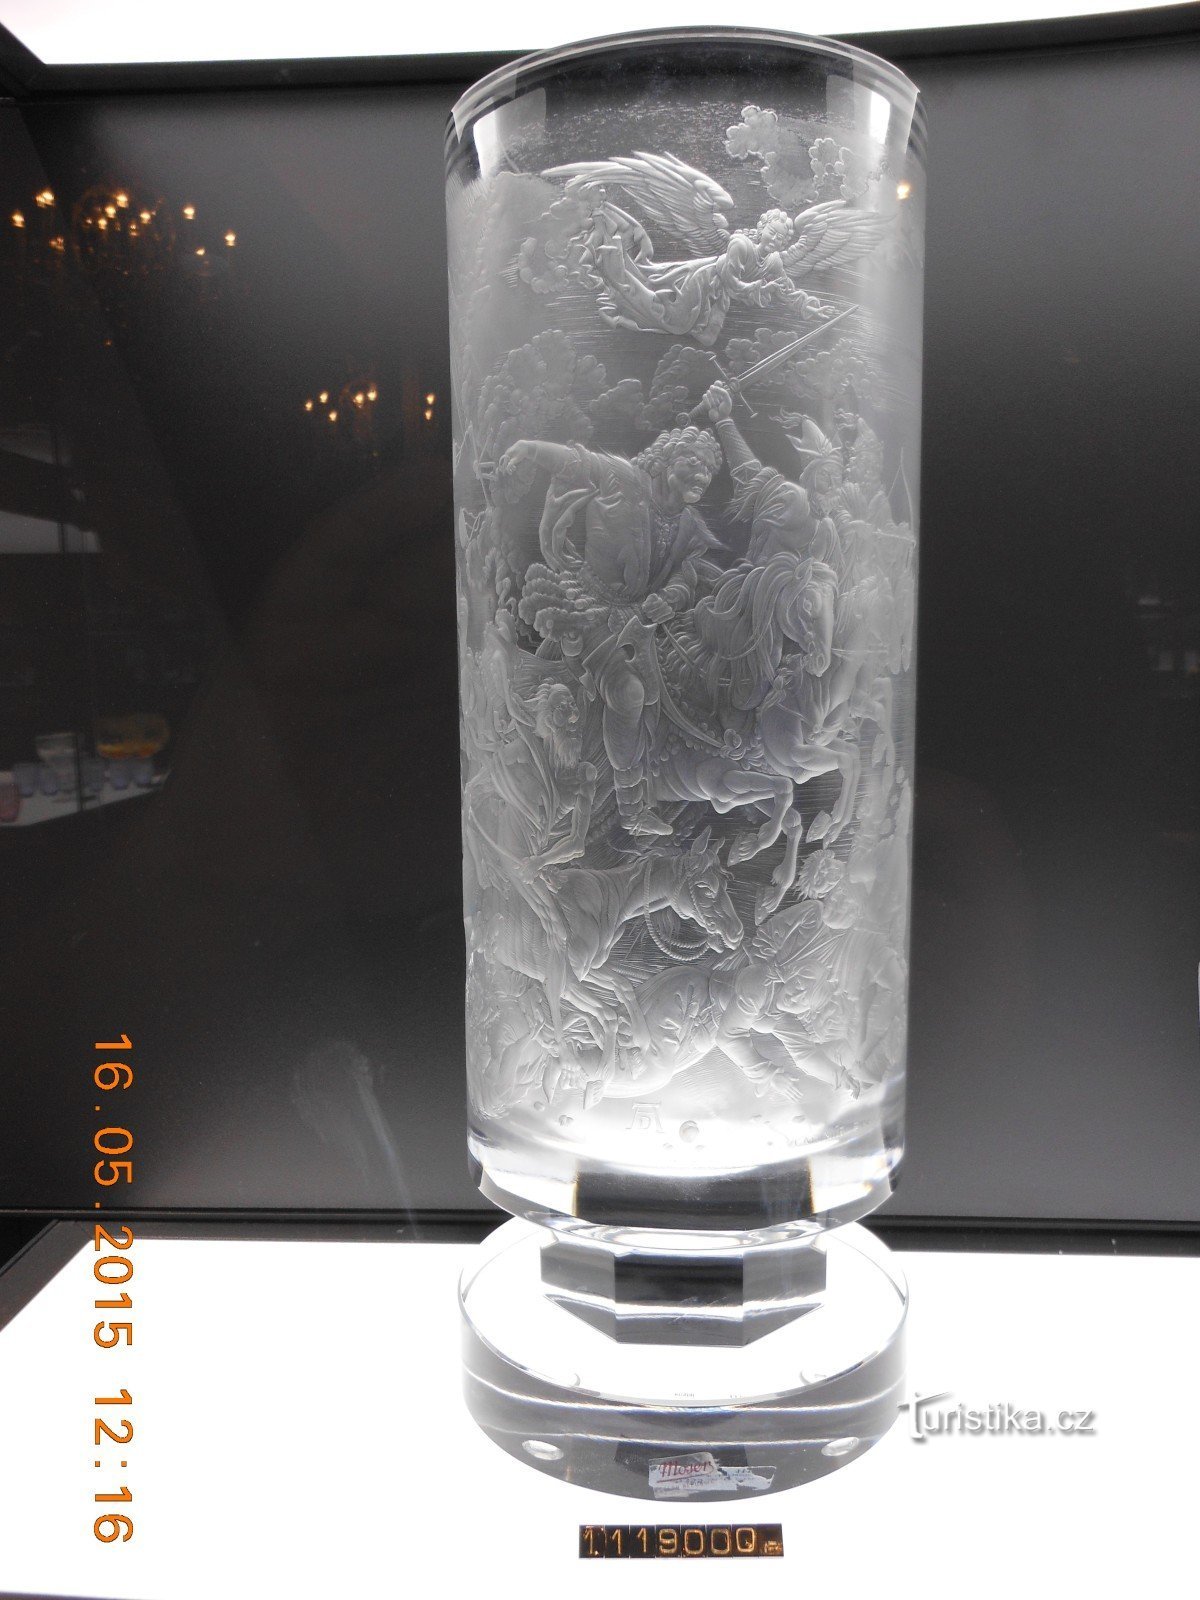 ваза за 1119000 XNUMX XNUMX чешских крон! в стекольном магазине